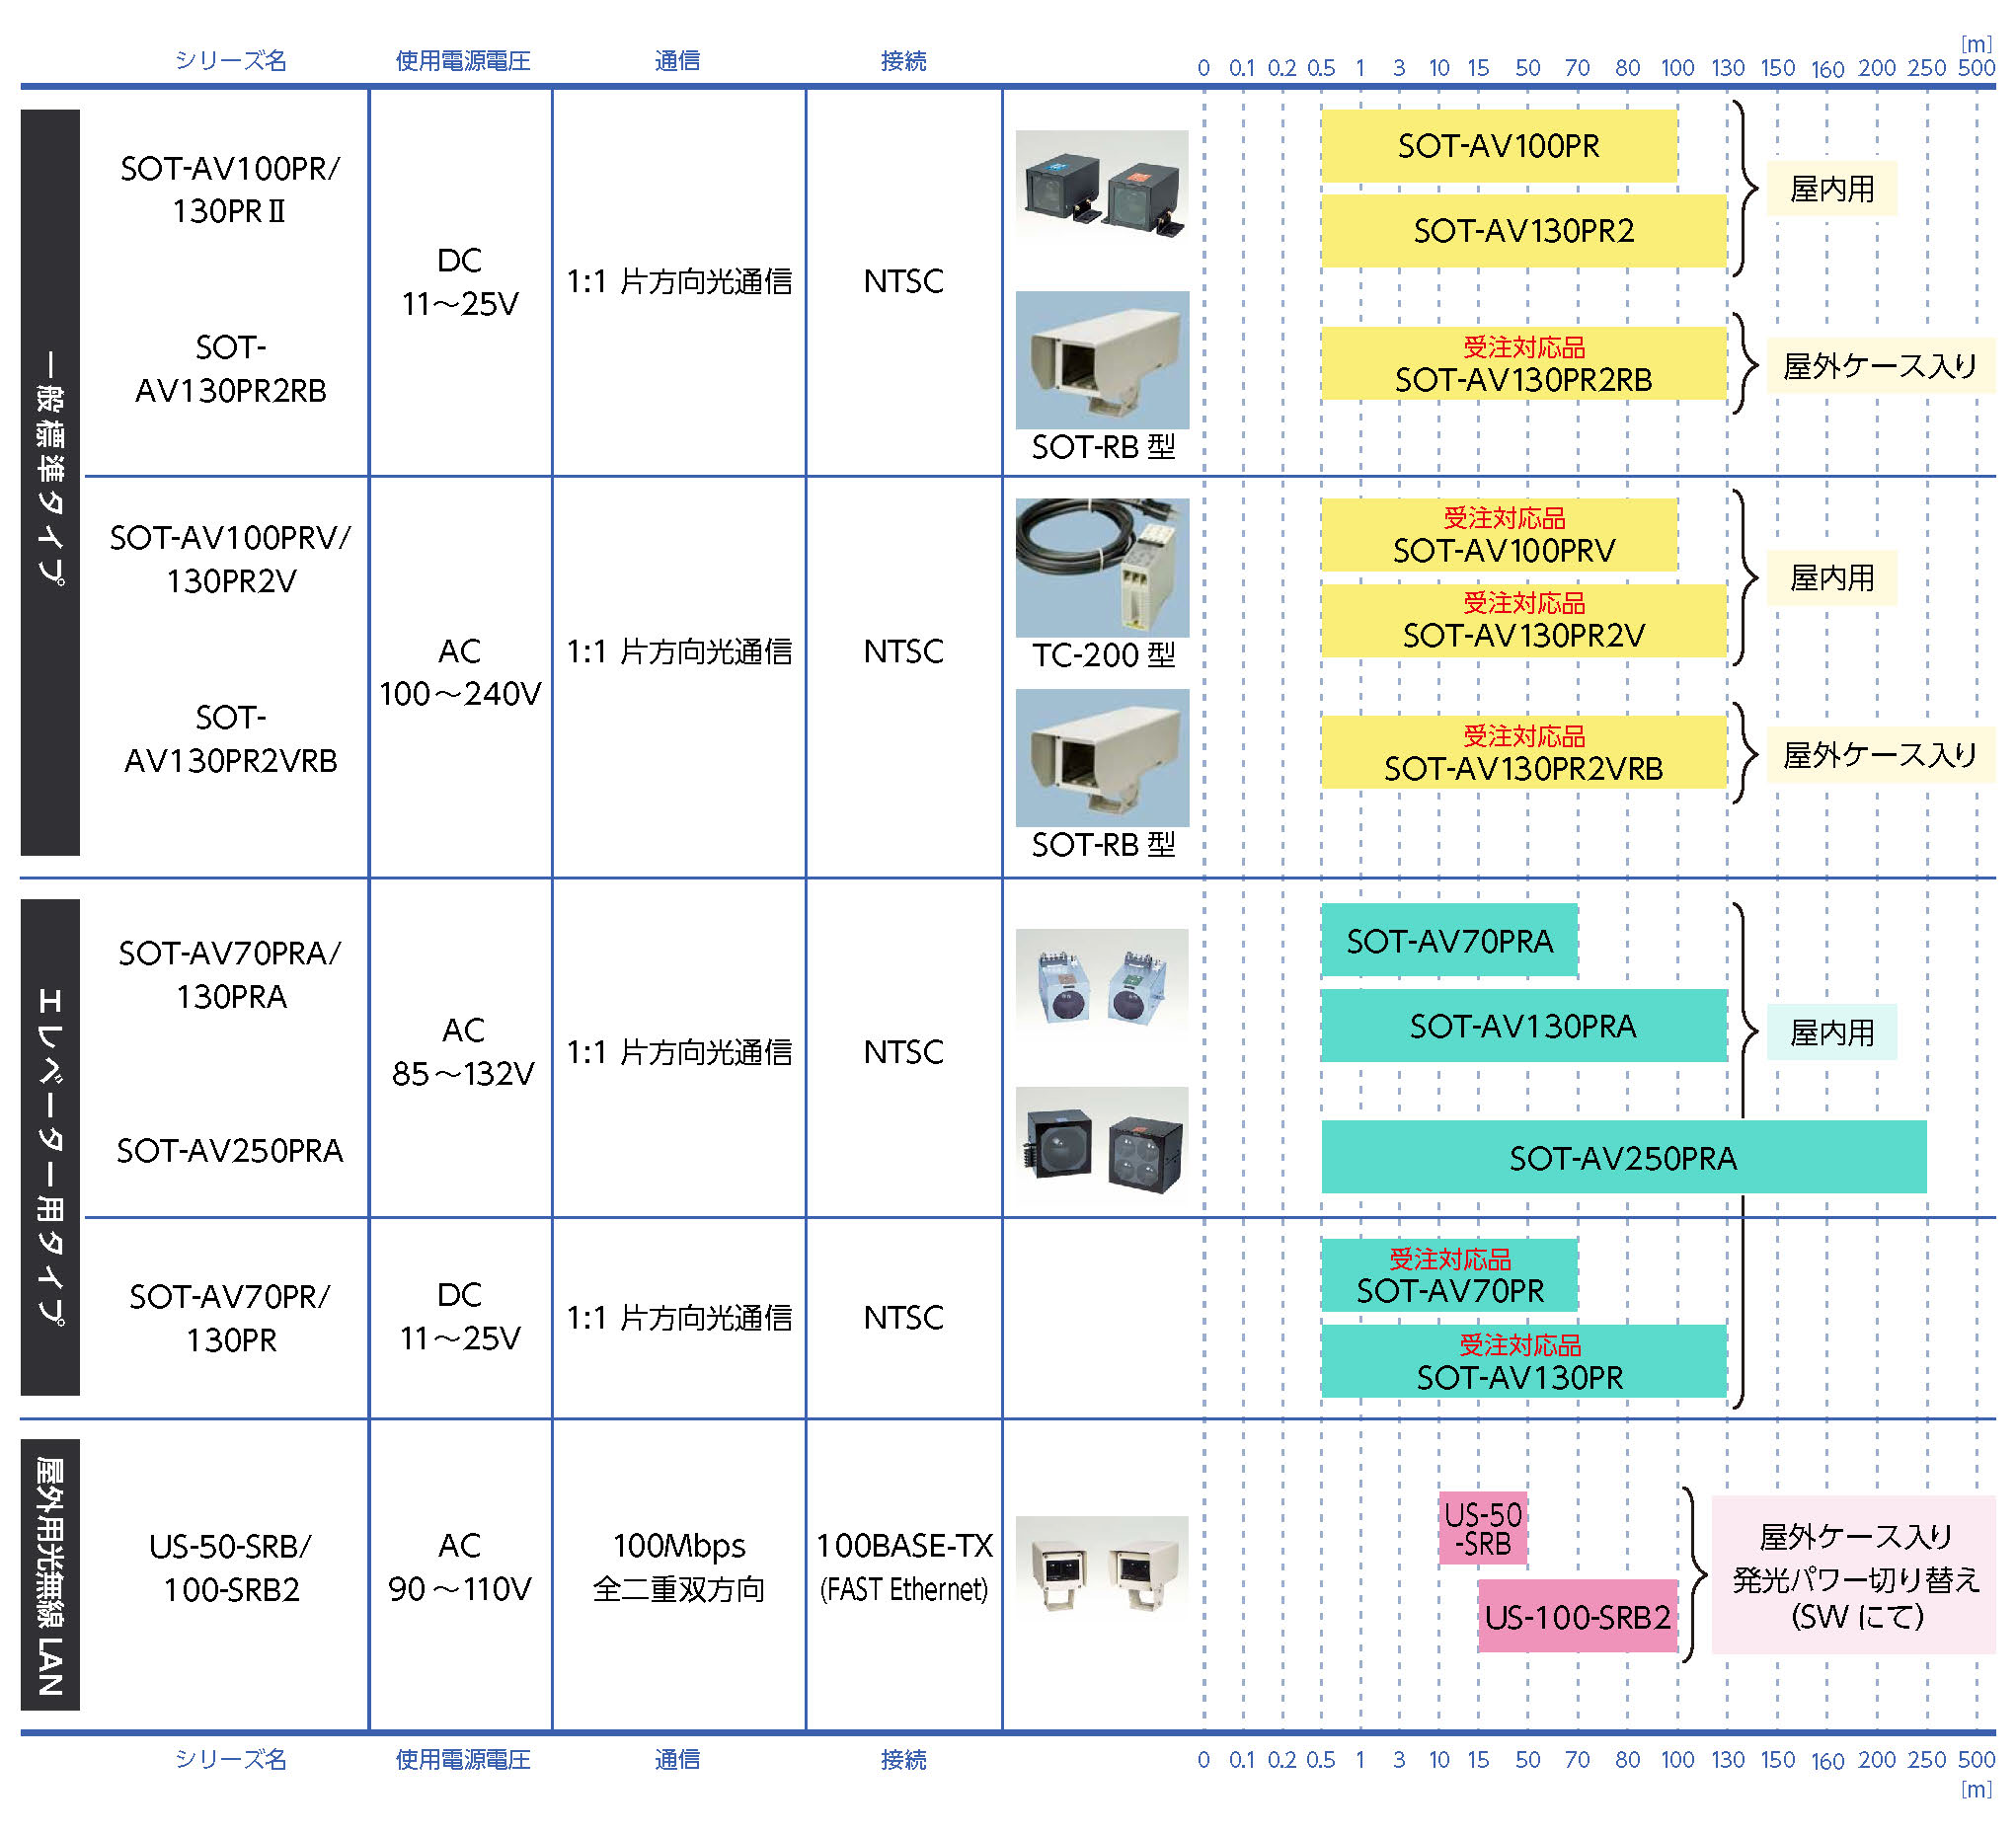 空間光映像伝送装置の製品マップ